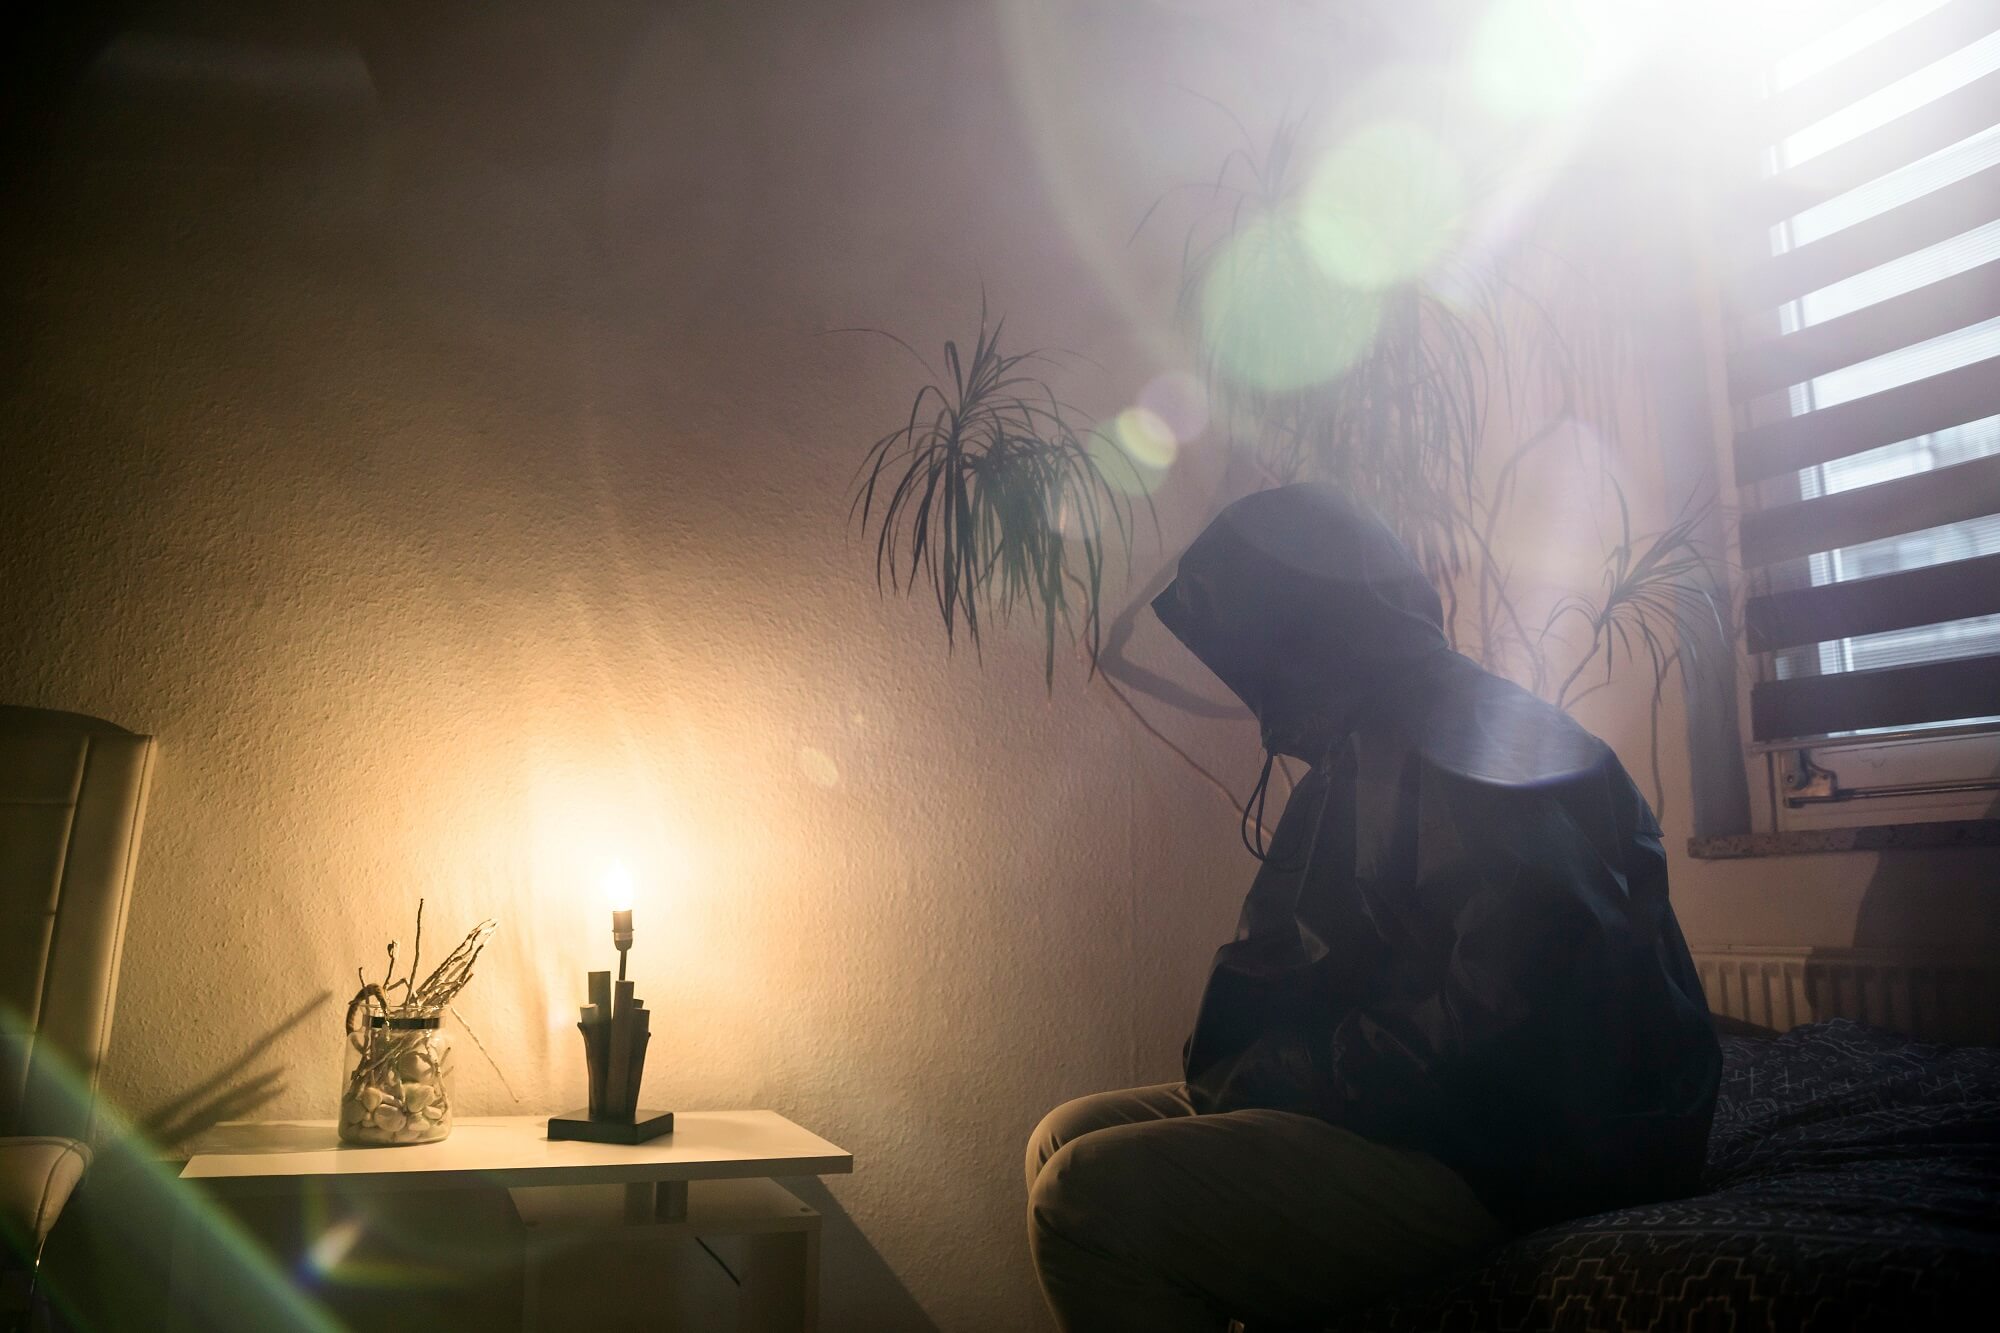 Persona inclinada en posición de rezo dentro de una habitación en la oscuridad.